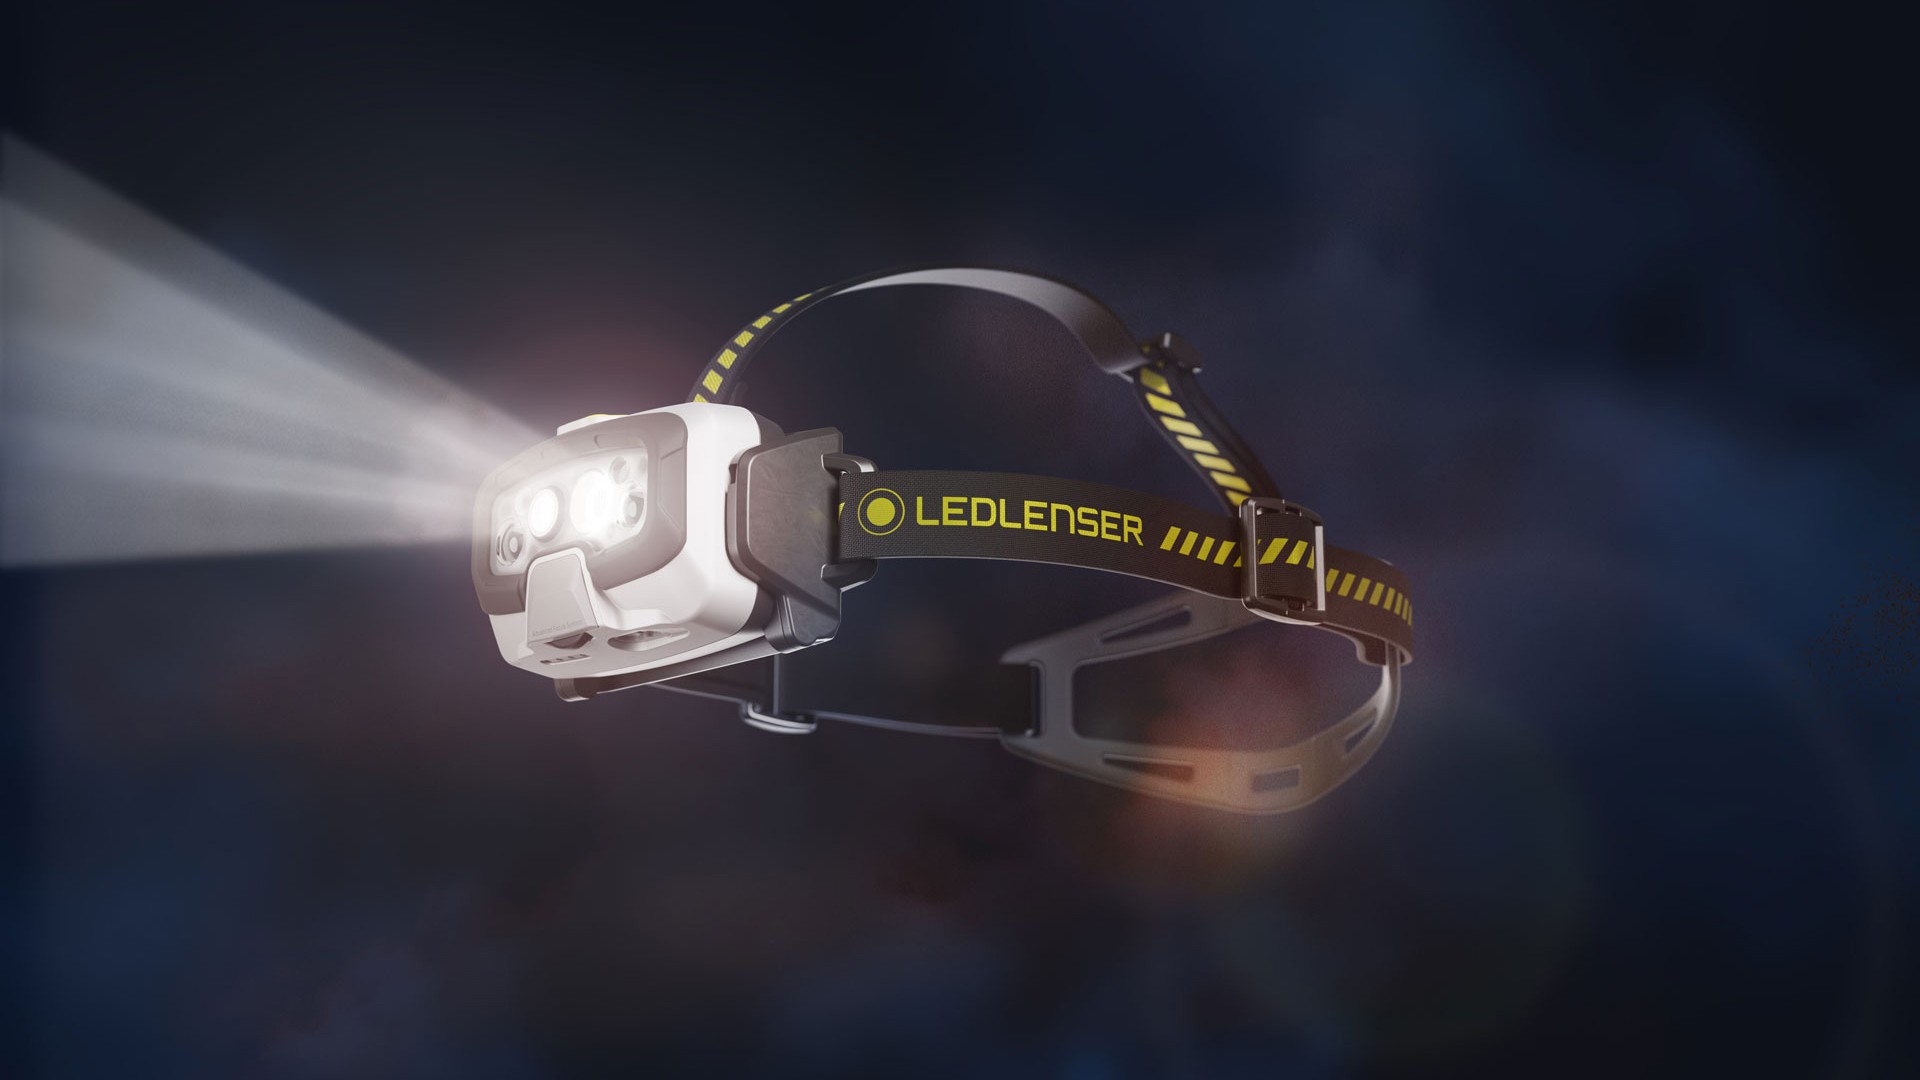 taschenlampen-rendering ledlenser stirnlampe rendering werbung marketing cgi licht leuchte 3d flashlight